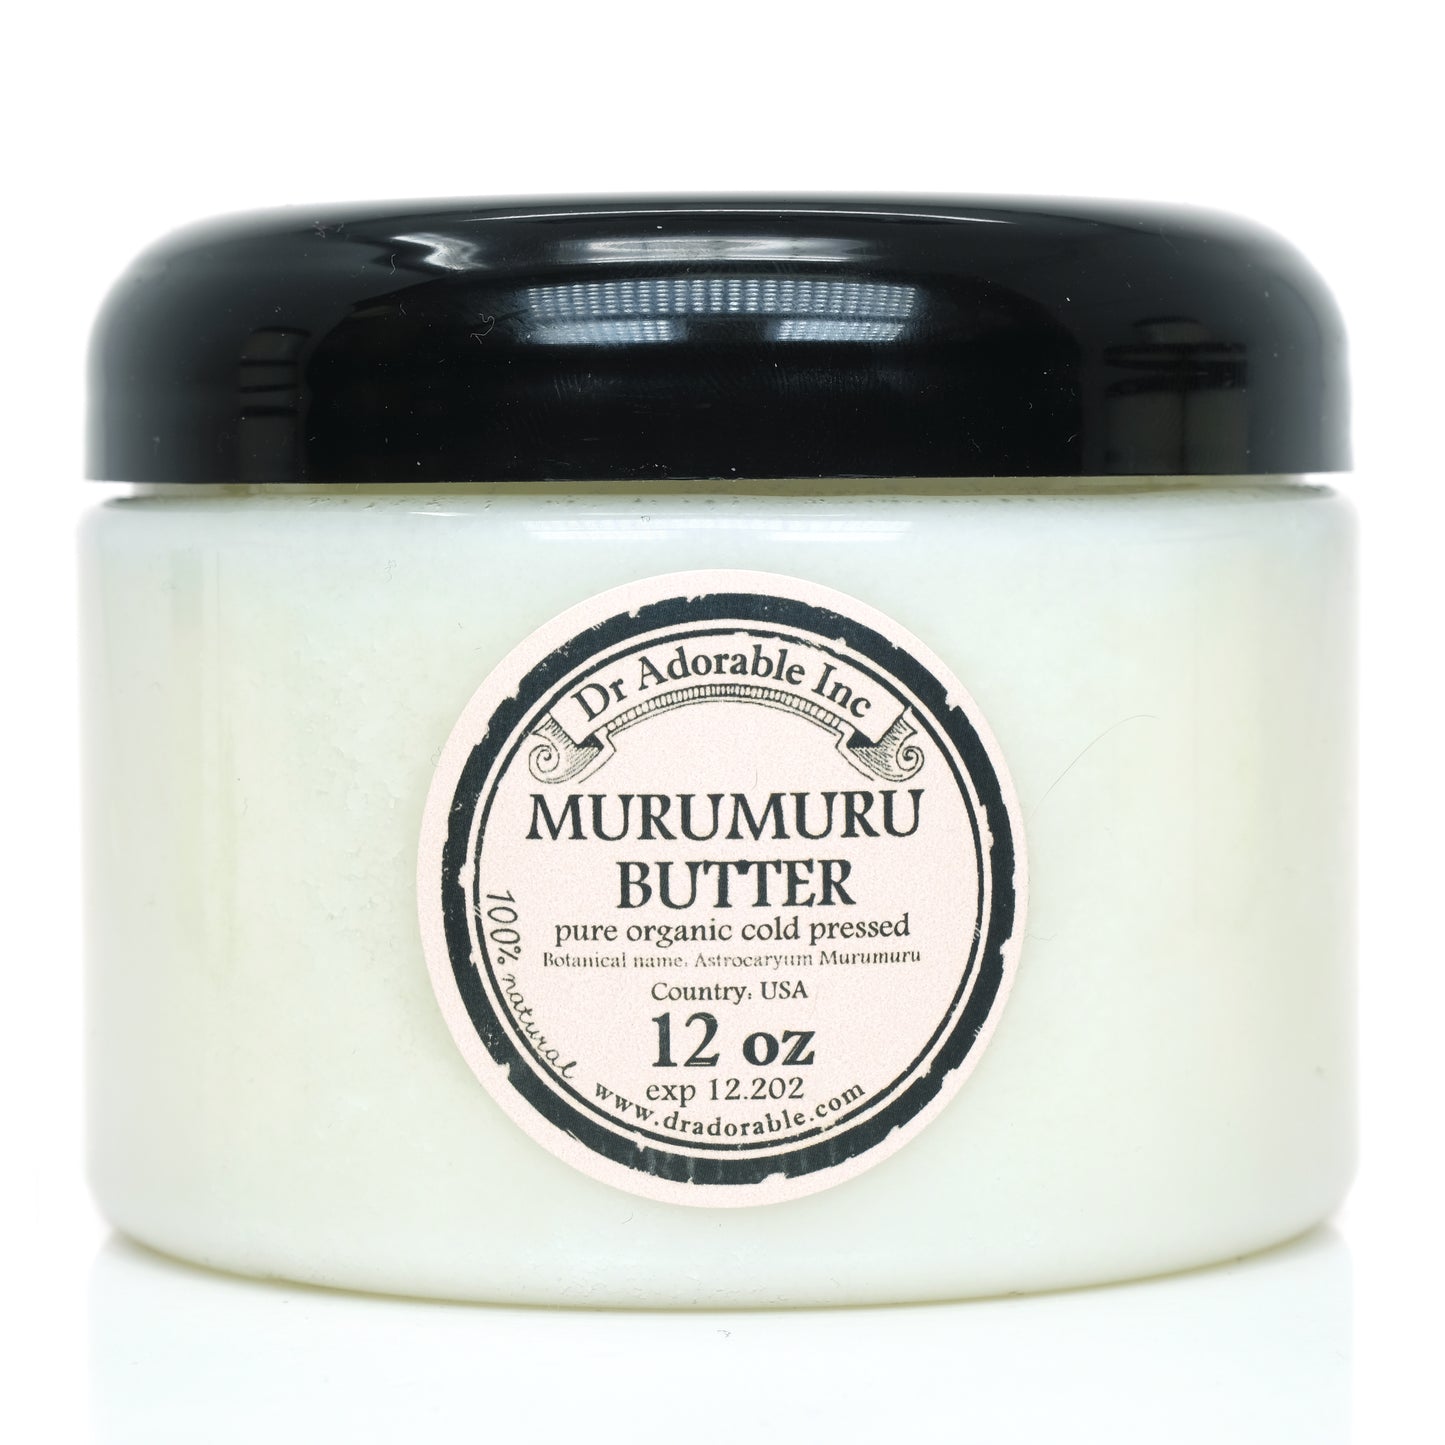 Murumuru Butter - Refined Pure Natural Organic Cold Pressed